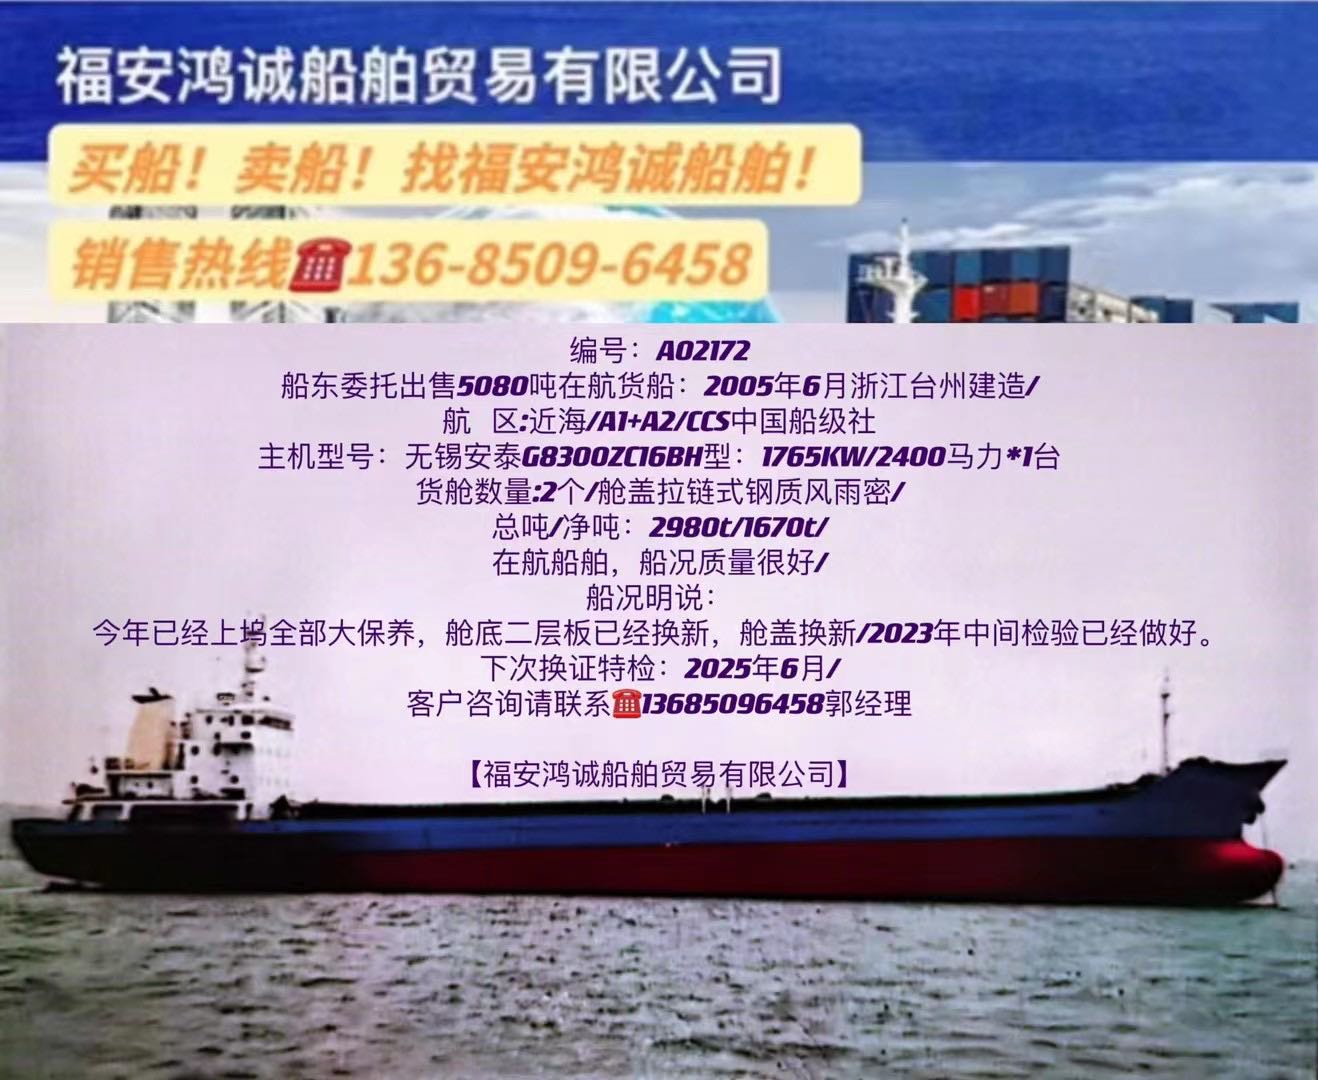 出售05年5080吨在航杂散货船